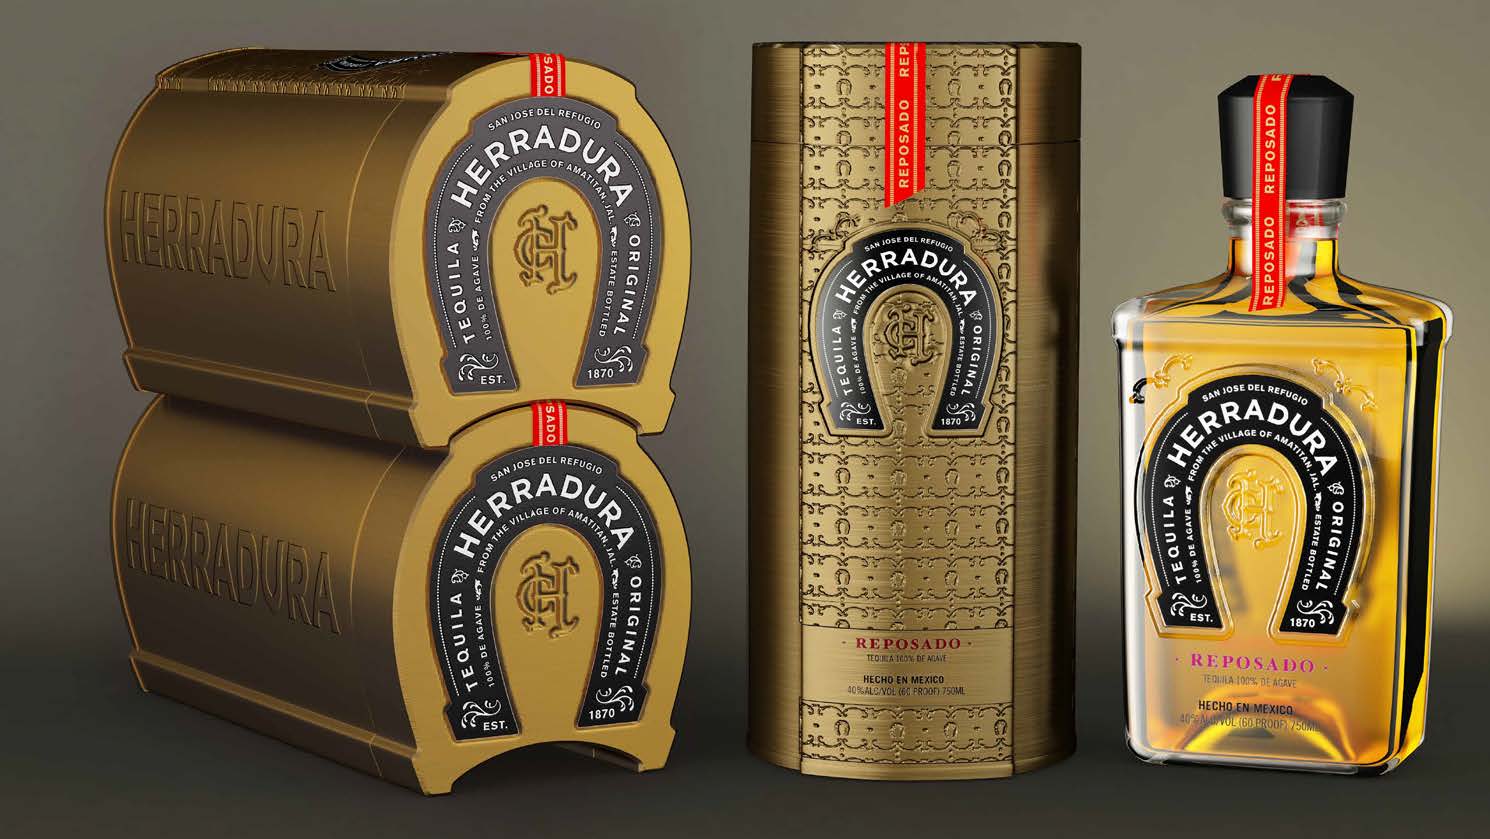 Herradura alcohol value added packaging design